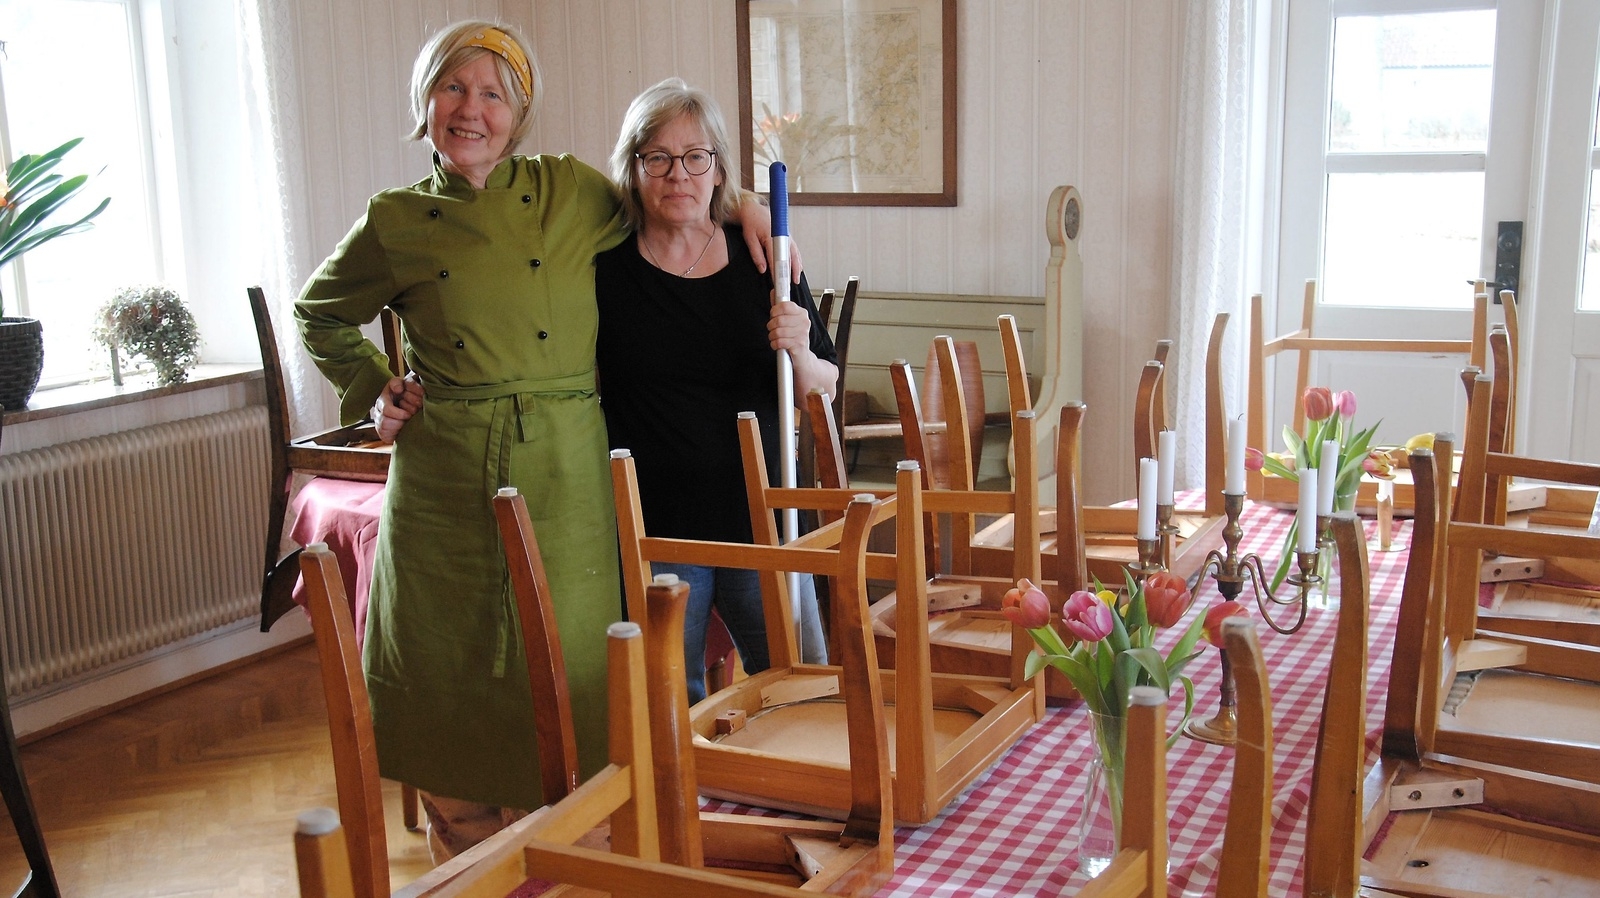 Ingemo Kroon är deltagare och hjälper Karin Johansson med att städa lokalerna för dagen.                           Foto: Stefan Olofson